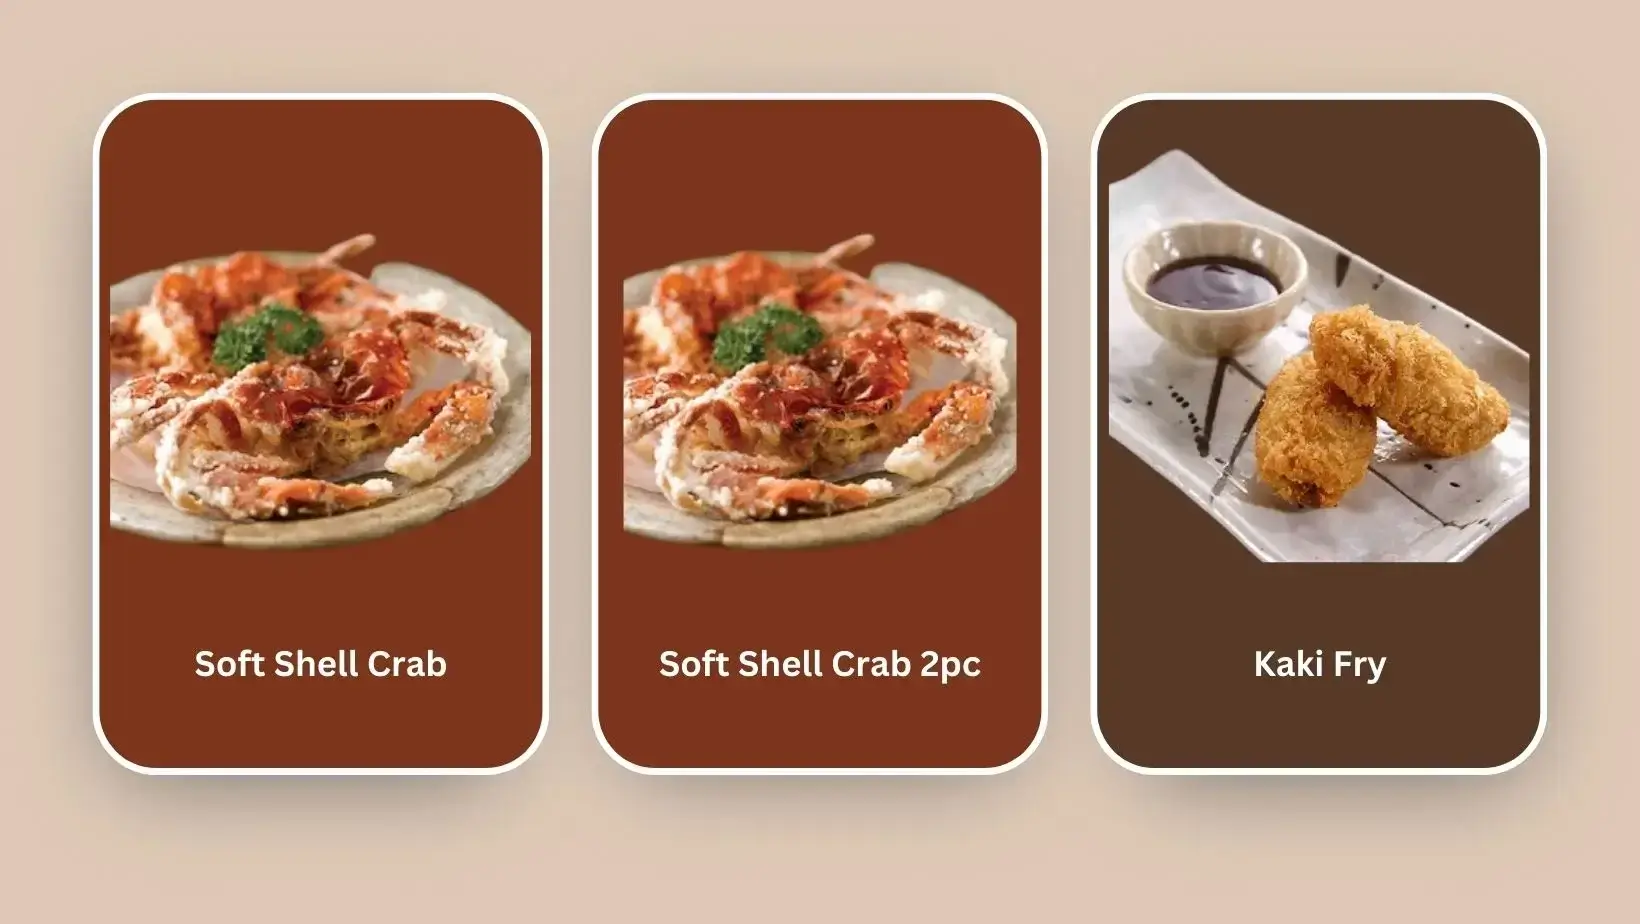 Kaki Fry, Soft Shell Crab 2pc, and Soft Shell Crab